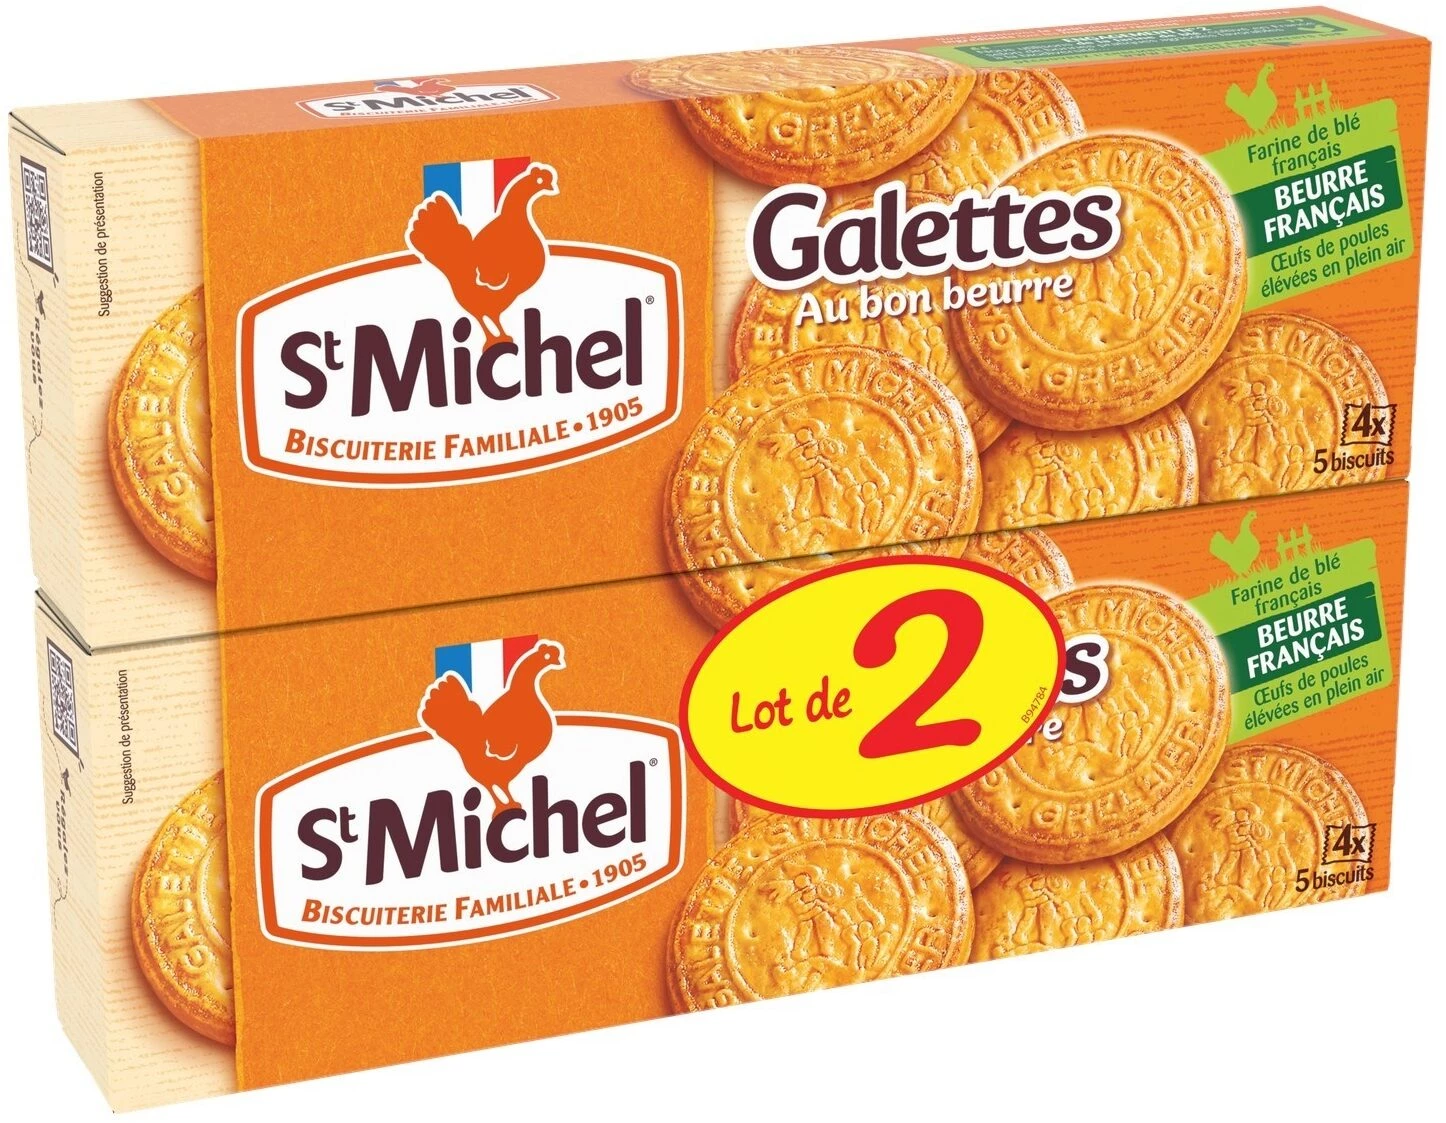 Biscuits Galettes Au Bon Beurre 2x130g - St Michel